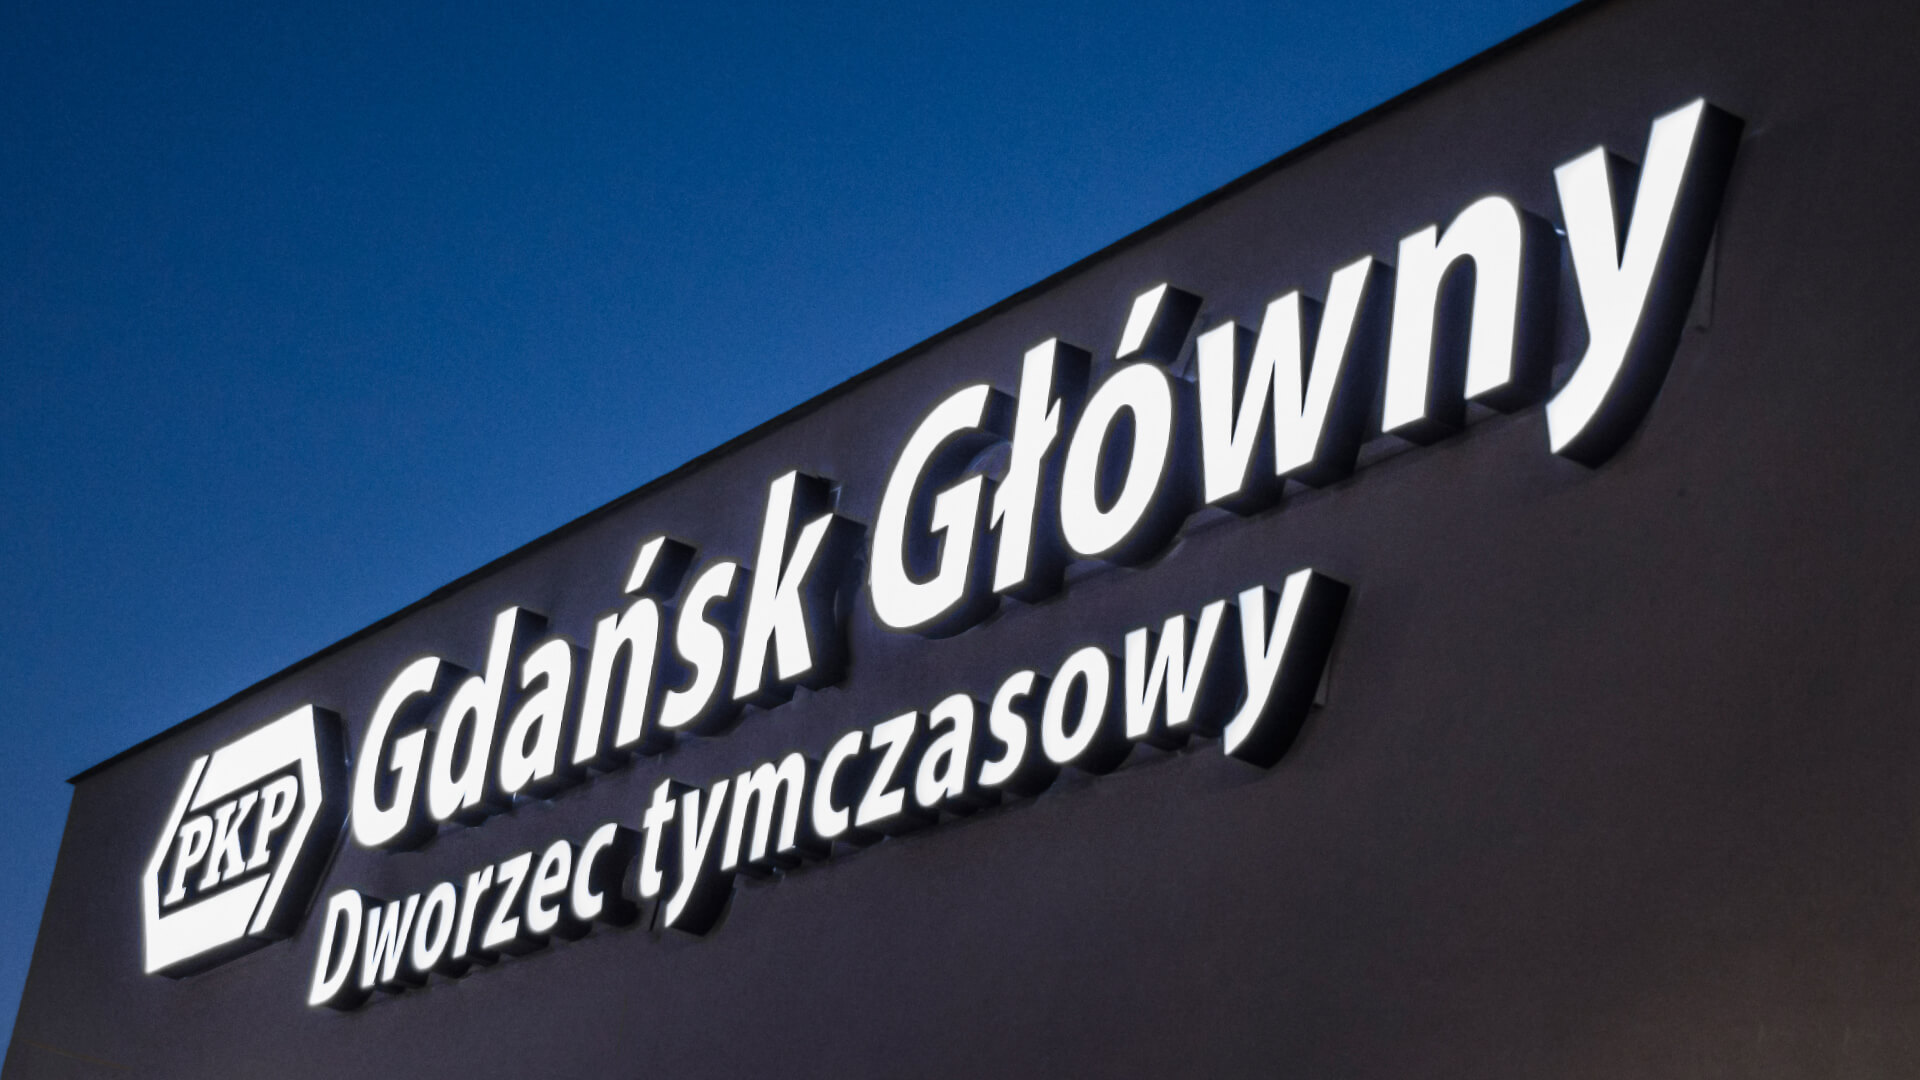 gdańsk Gdansk principale algues point temporaire station - gdansk-dworzec-timporowy-lettres-sous-lumière-lettres-au-dessus-de-l'entrée-lettres-blanches-lettres-spatiales-lettres-sur-le-mur-dworzec-pkp-gdansk-glowny